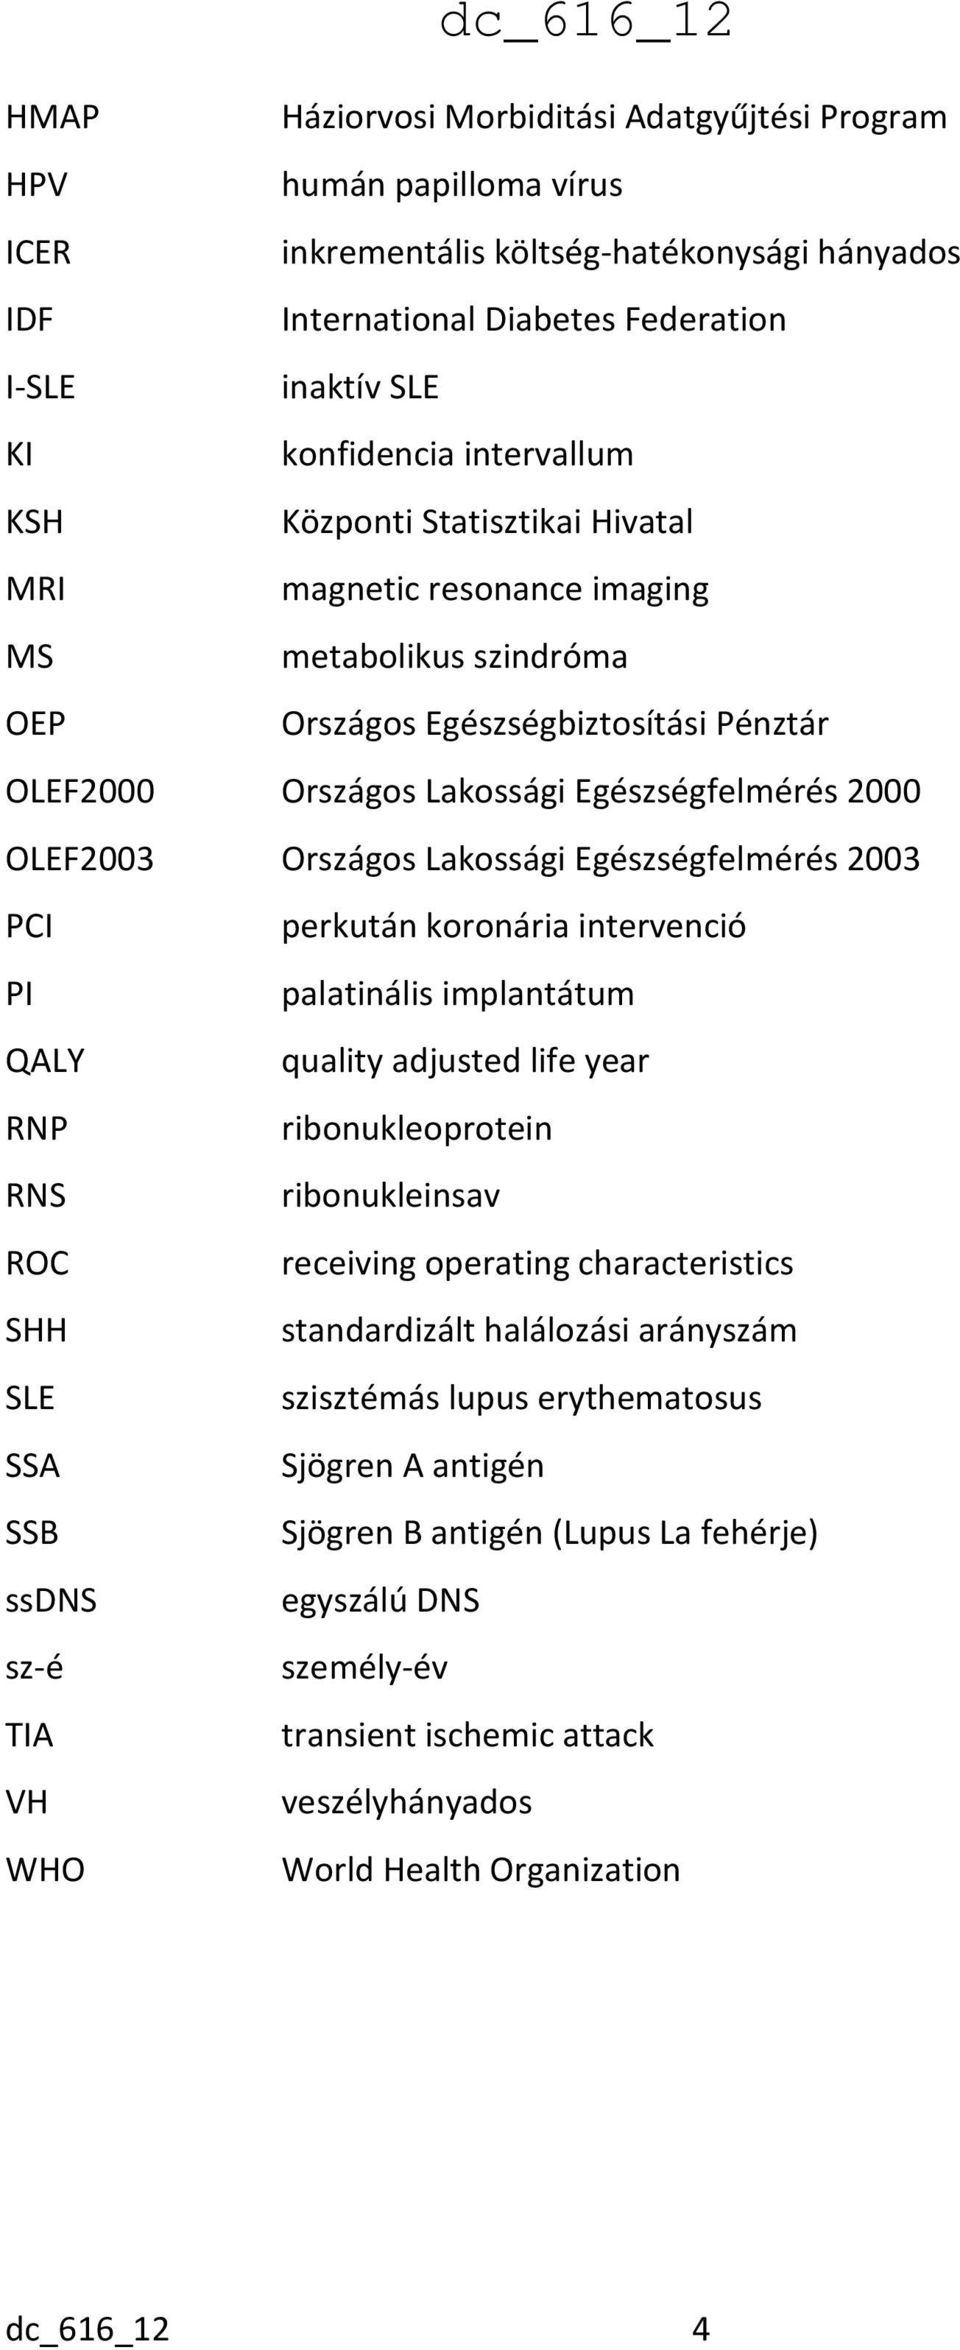 OLEF2003 Országos Lakossági Egészségfelmérés 2003 PCI perkután koronária intervenció PI palatinális implantátum QALY quality adjusted life year RNP ribonukleoprotein RNS ribonukleinsav ROC receiving